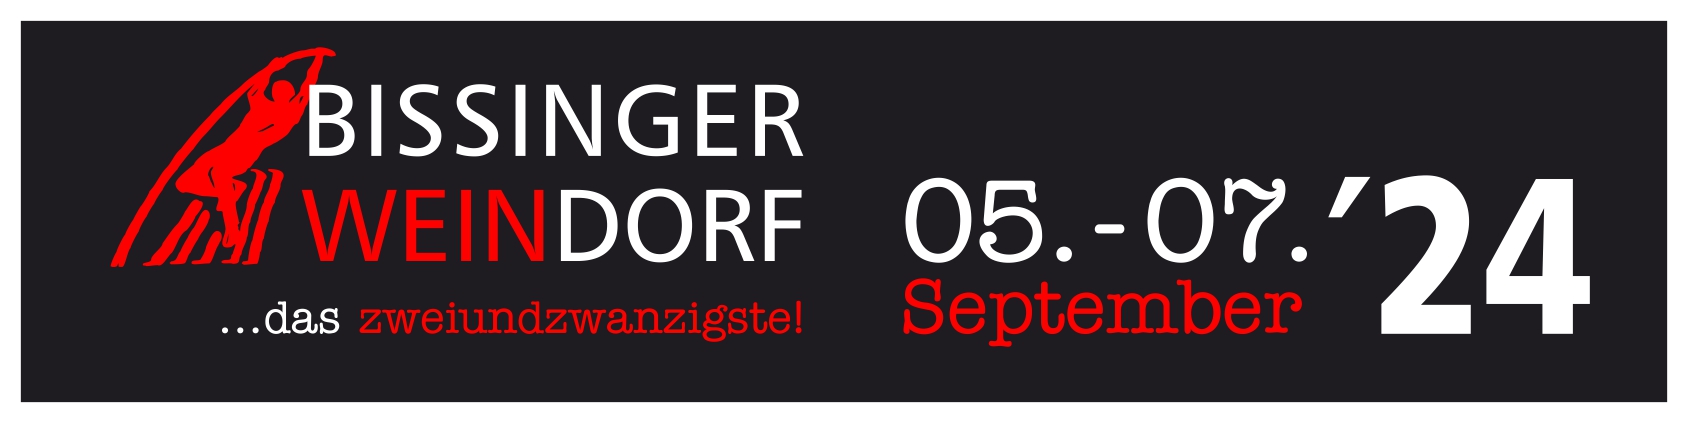 21. Bissinger Weindorf  vom 07. - 09. September am Bissinger Rathaus